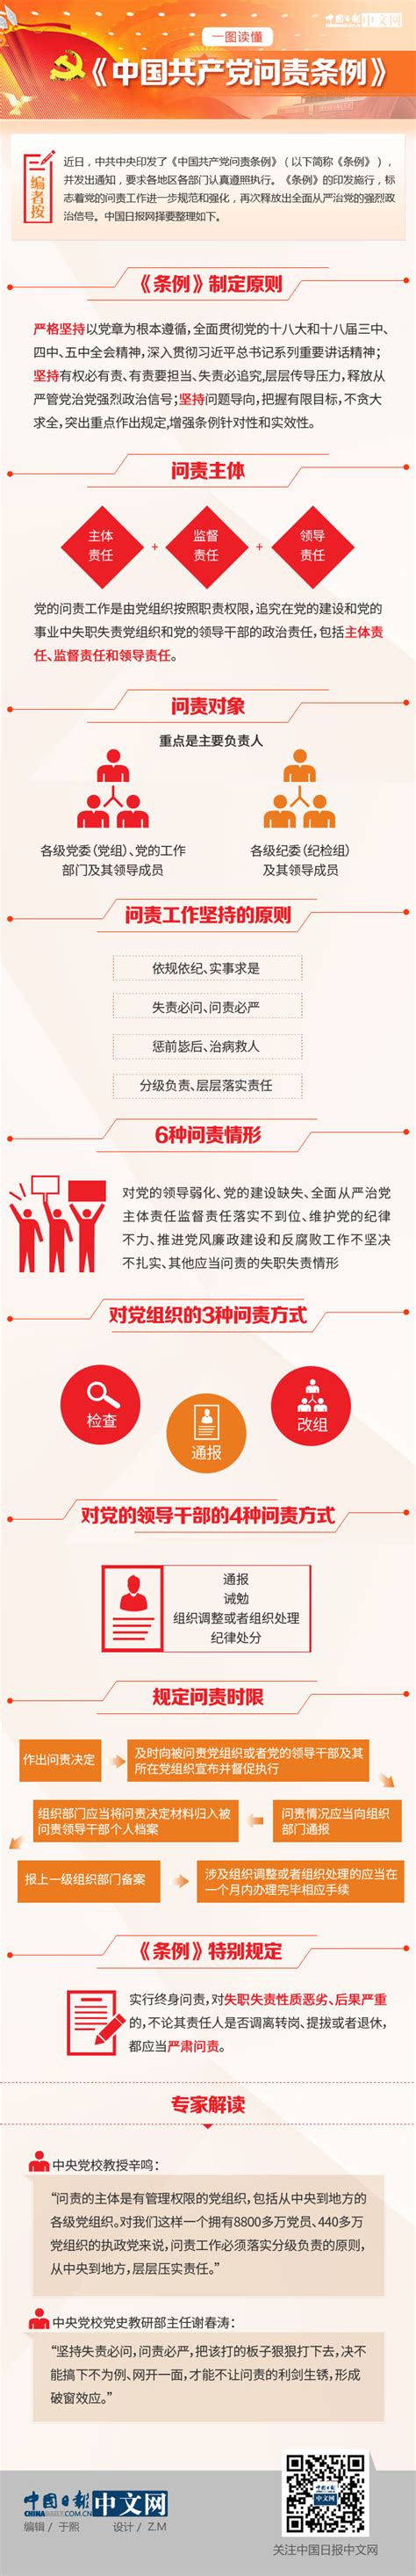 一图读懂《中国共产党问责条例》 - 中国日报网